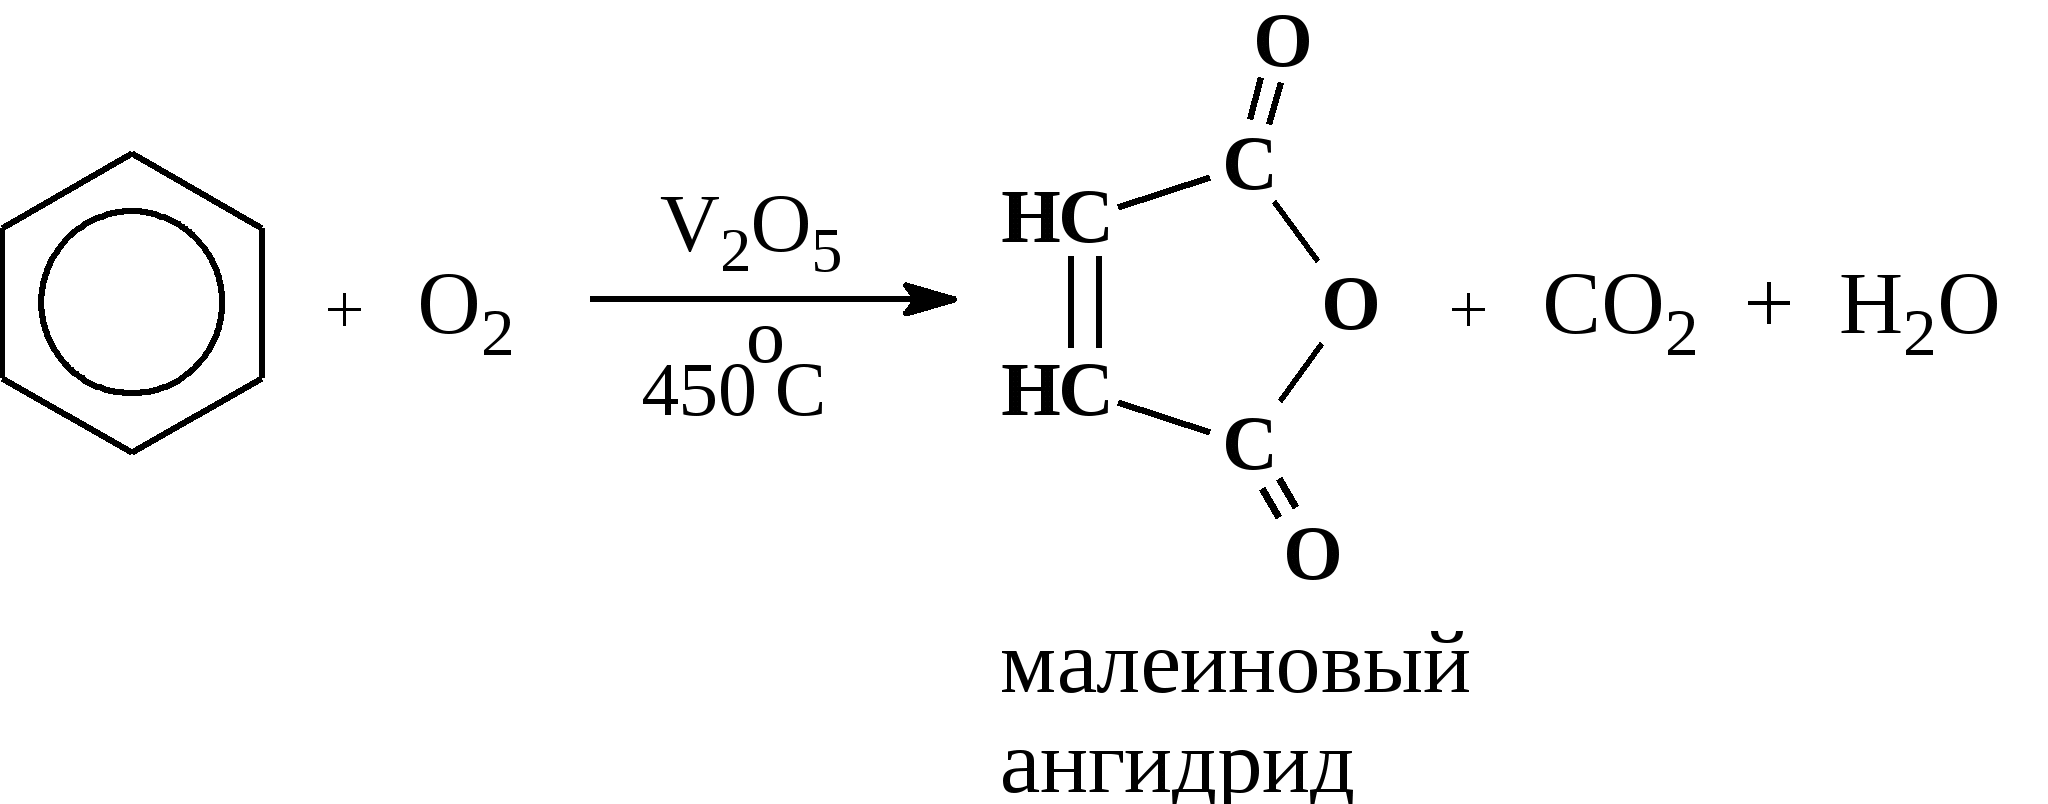 Горение толуола реакция. Каталитическое окисление бензола кислородом. Окисление бензола v2o5. Окисление бензола кислородом при катализаторе v2o5. Каталитическое окисление метилбензола.